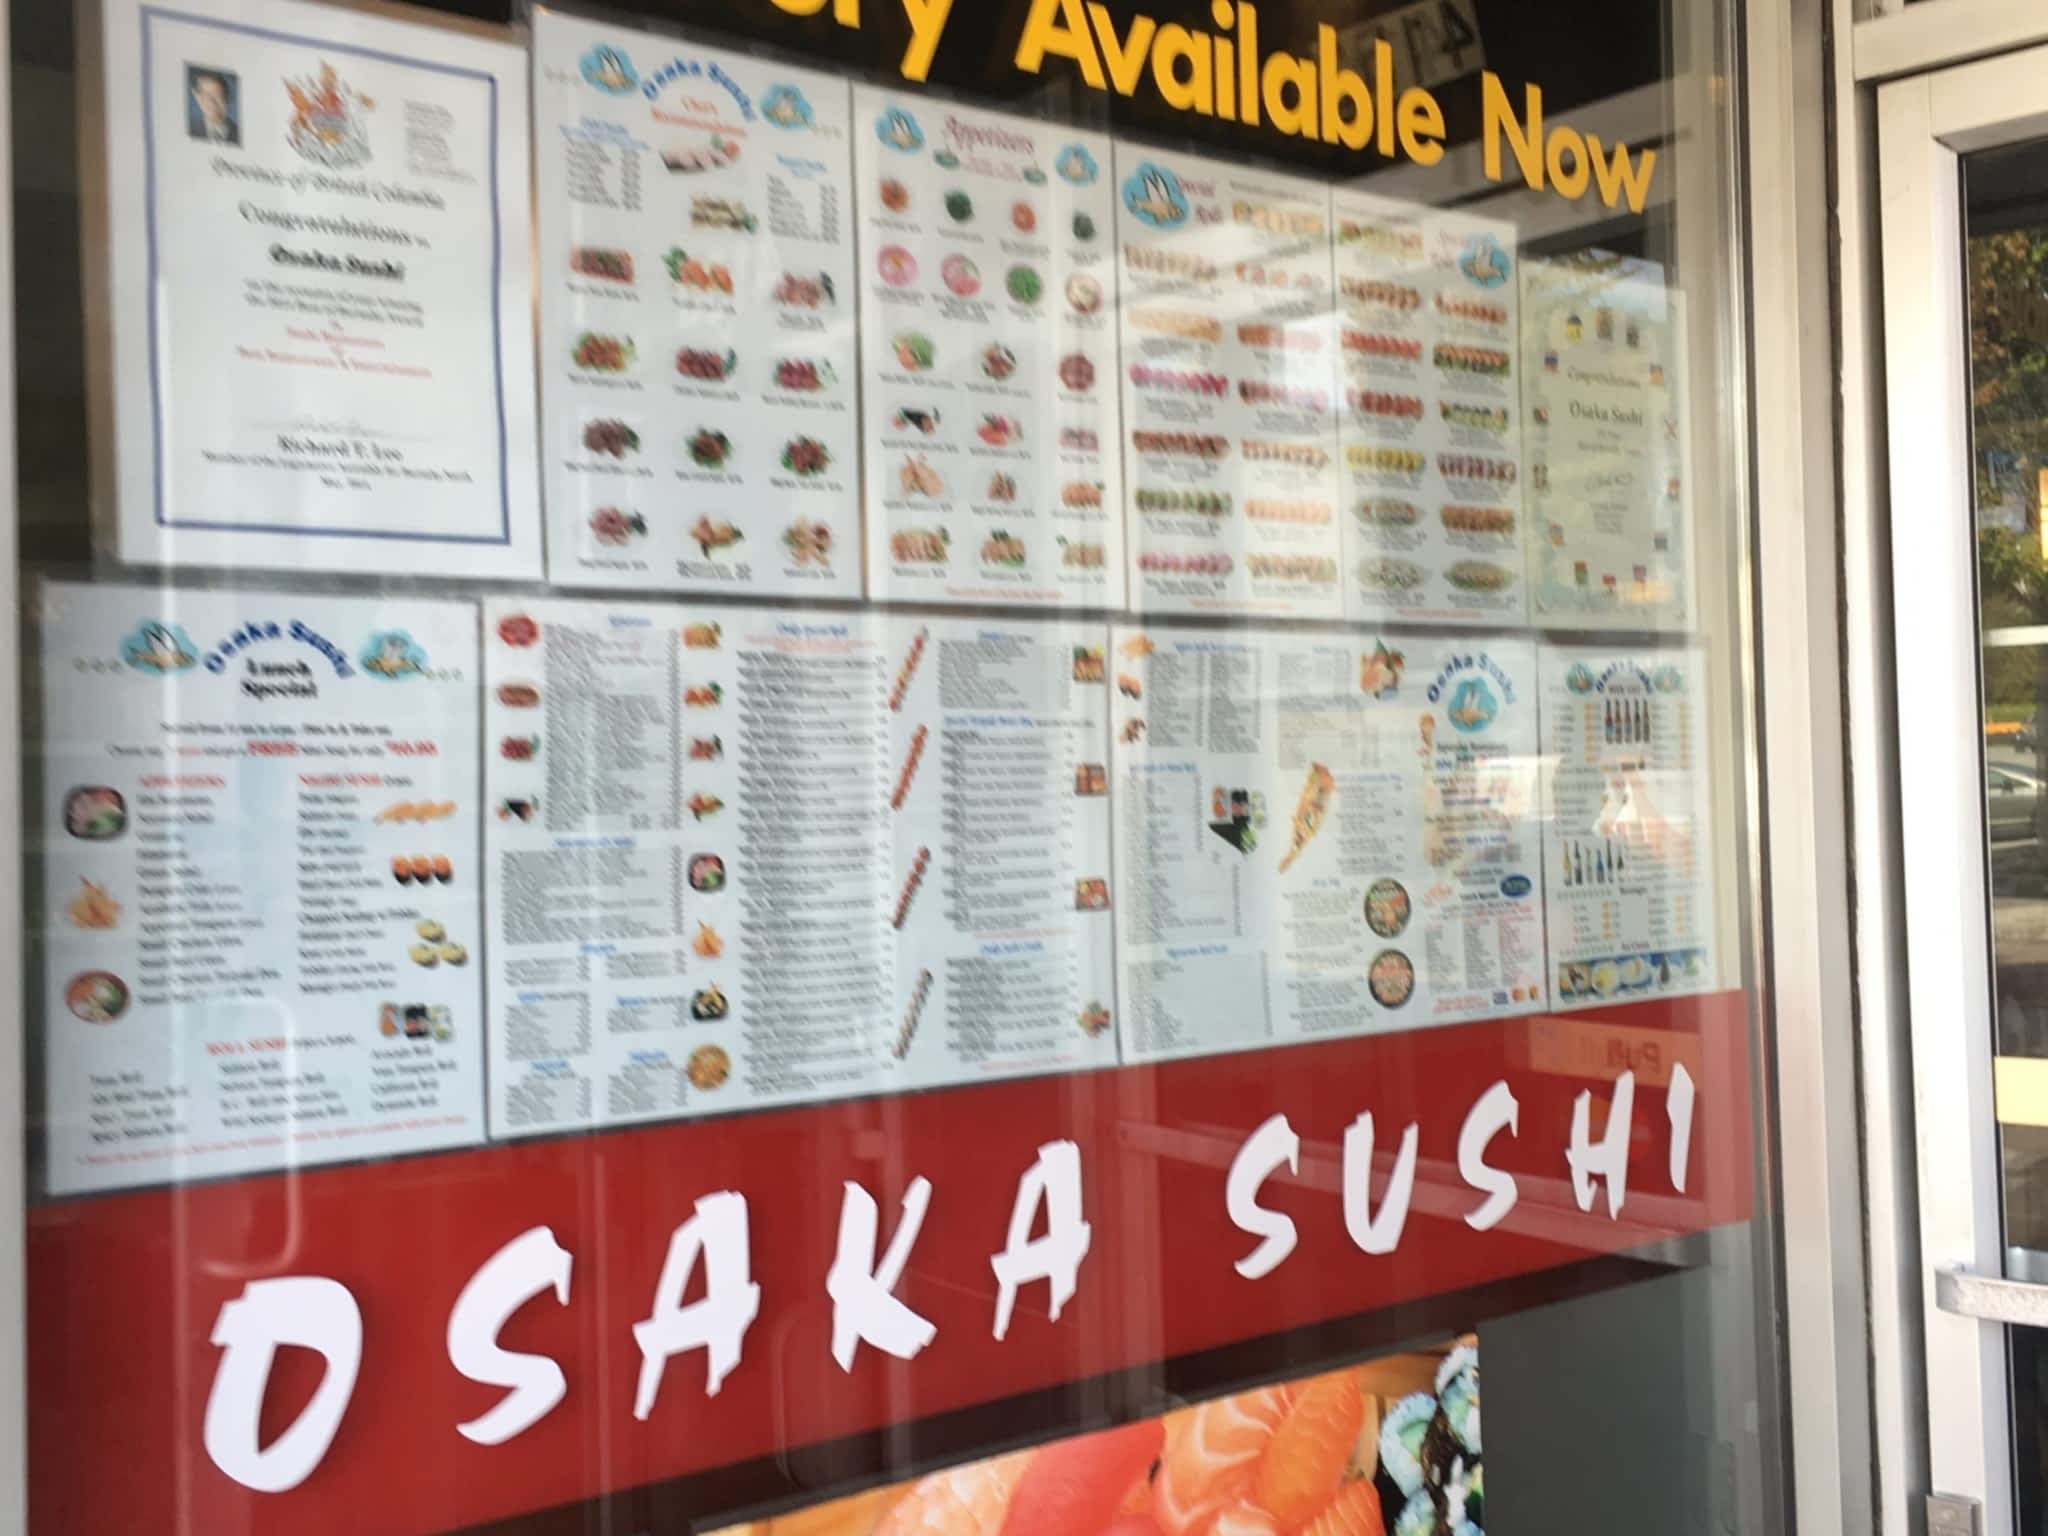 photo Osaka Sushi